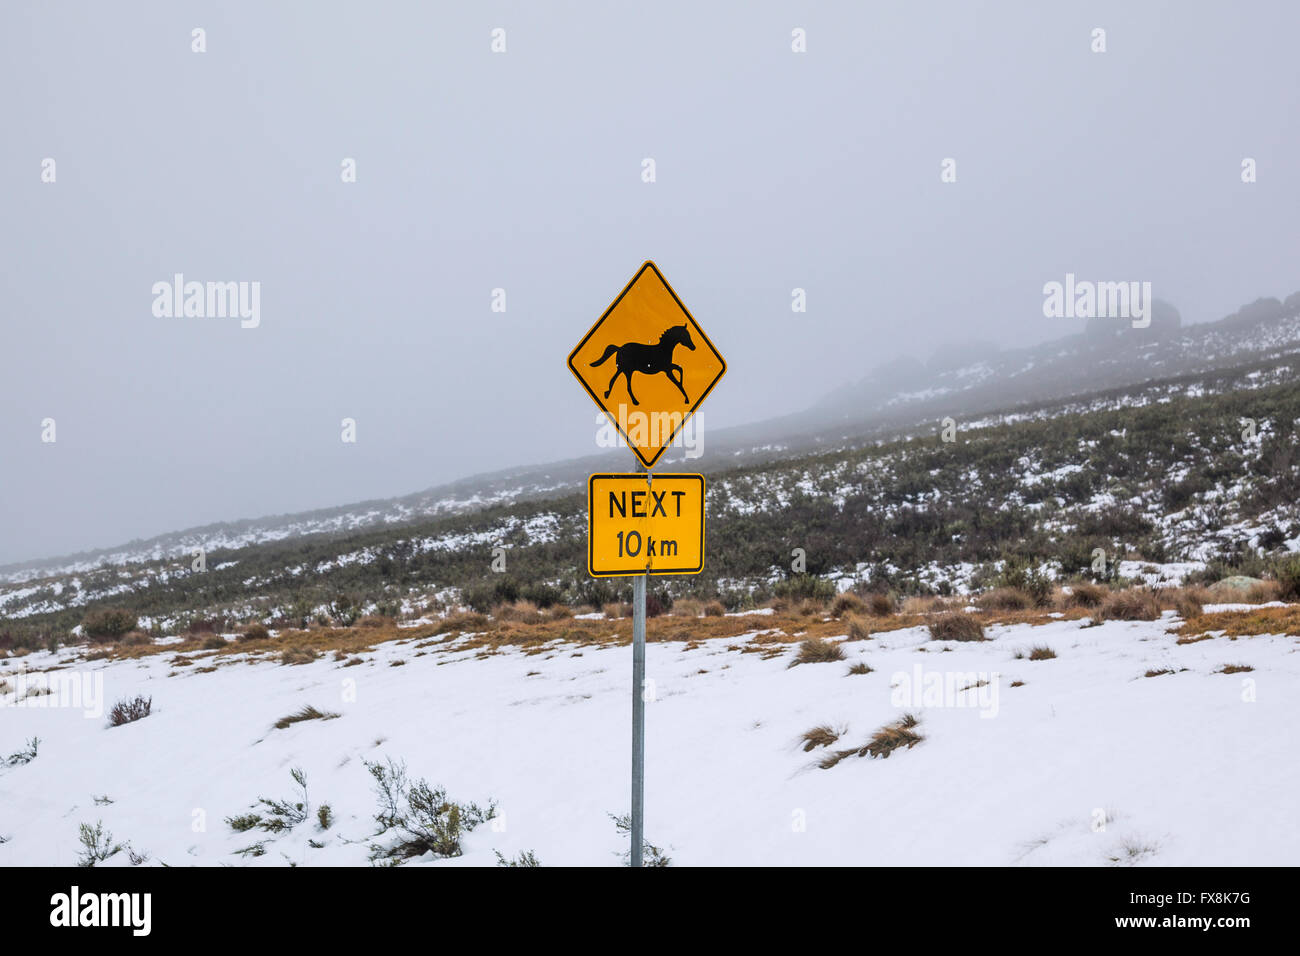 Australien, New South Wales, verschneite Berge, Kosciusko Nationalpark Straße Verkehrszeichen warnen Brumbies, wilde Pferde Stockfoto